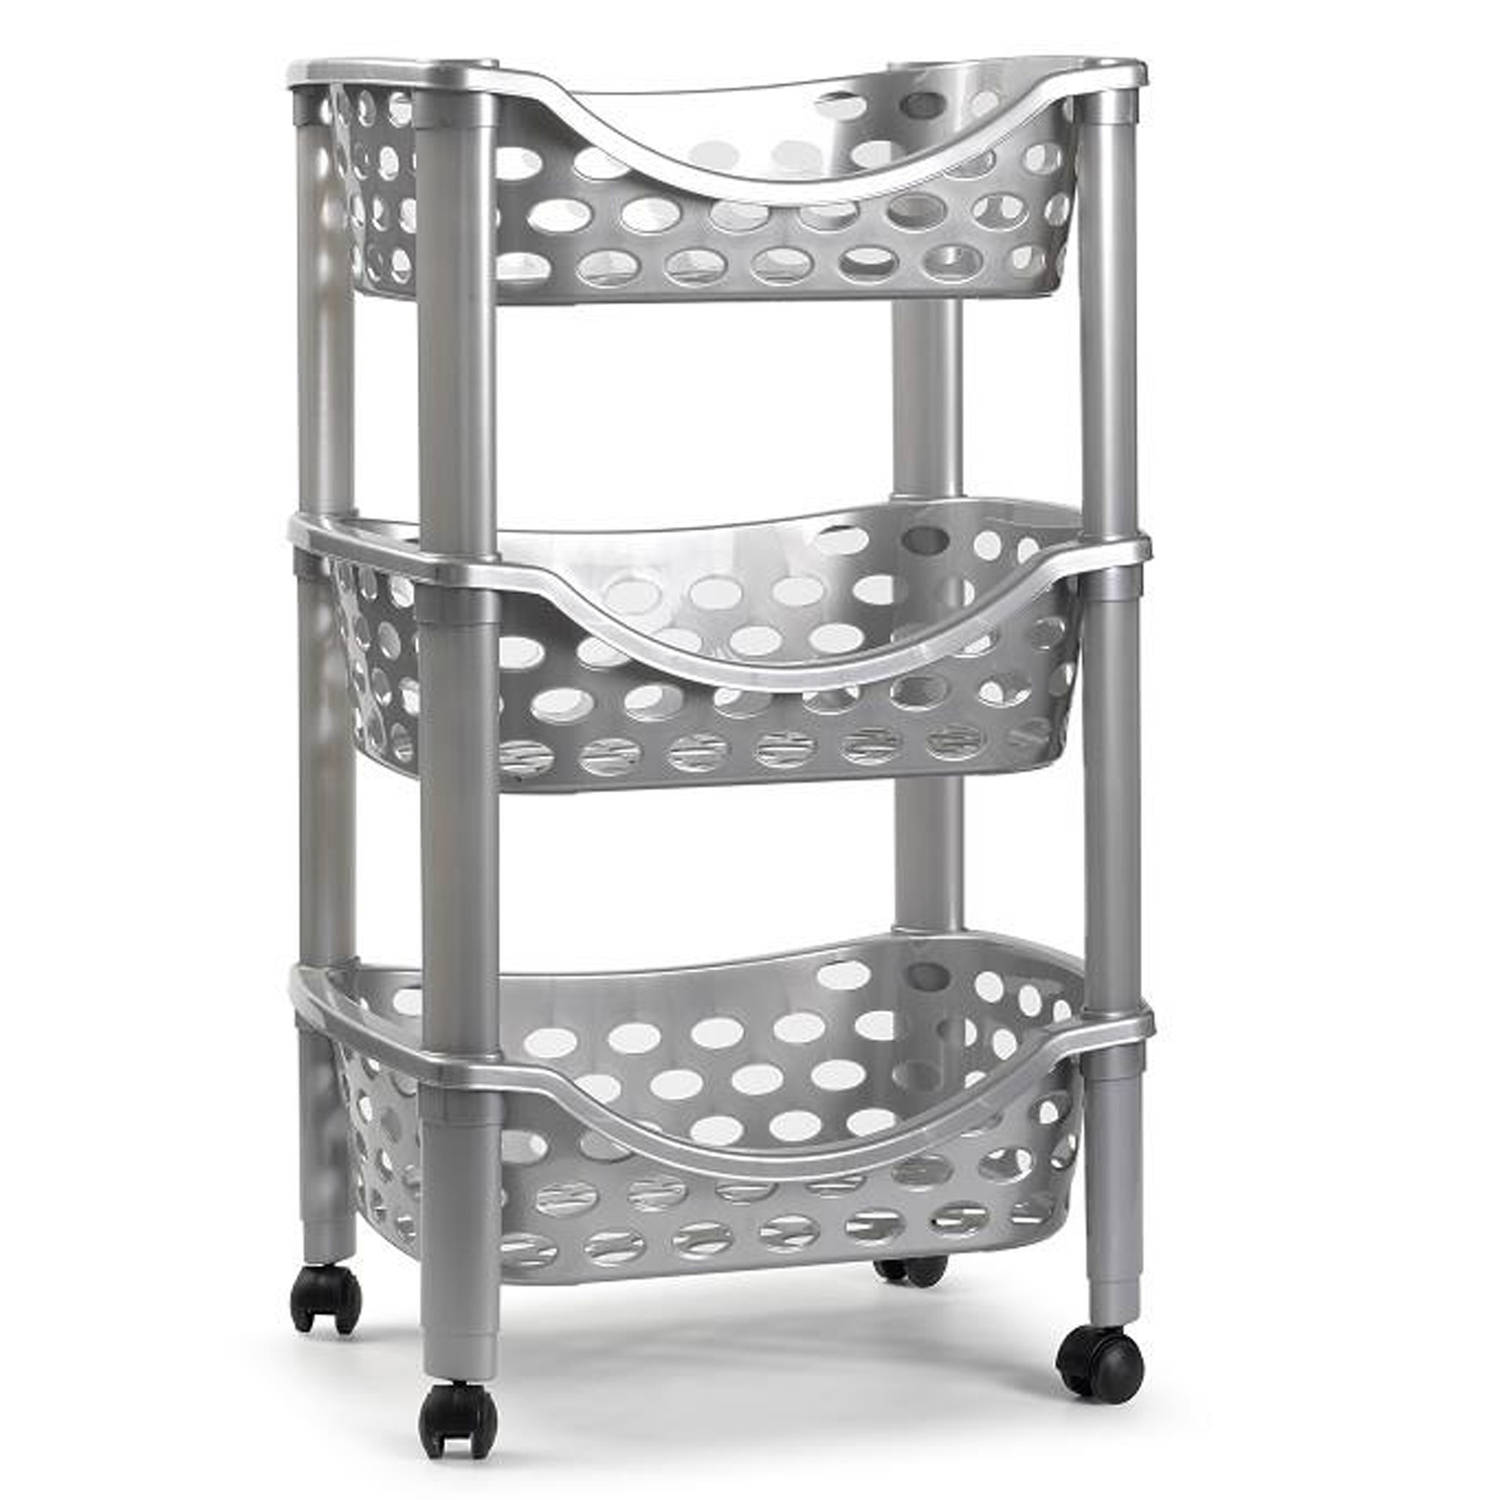 Keukentrolley/roltafel 3 laags kunststof zilver x 65 cm - trolley | Blokker